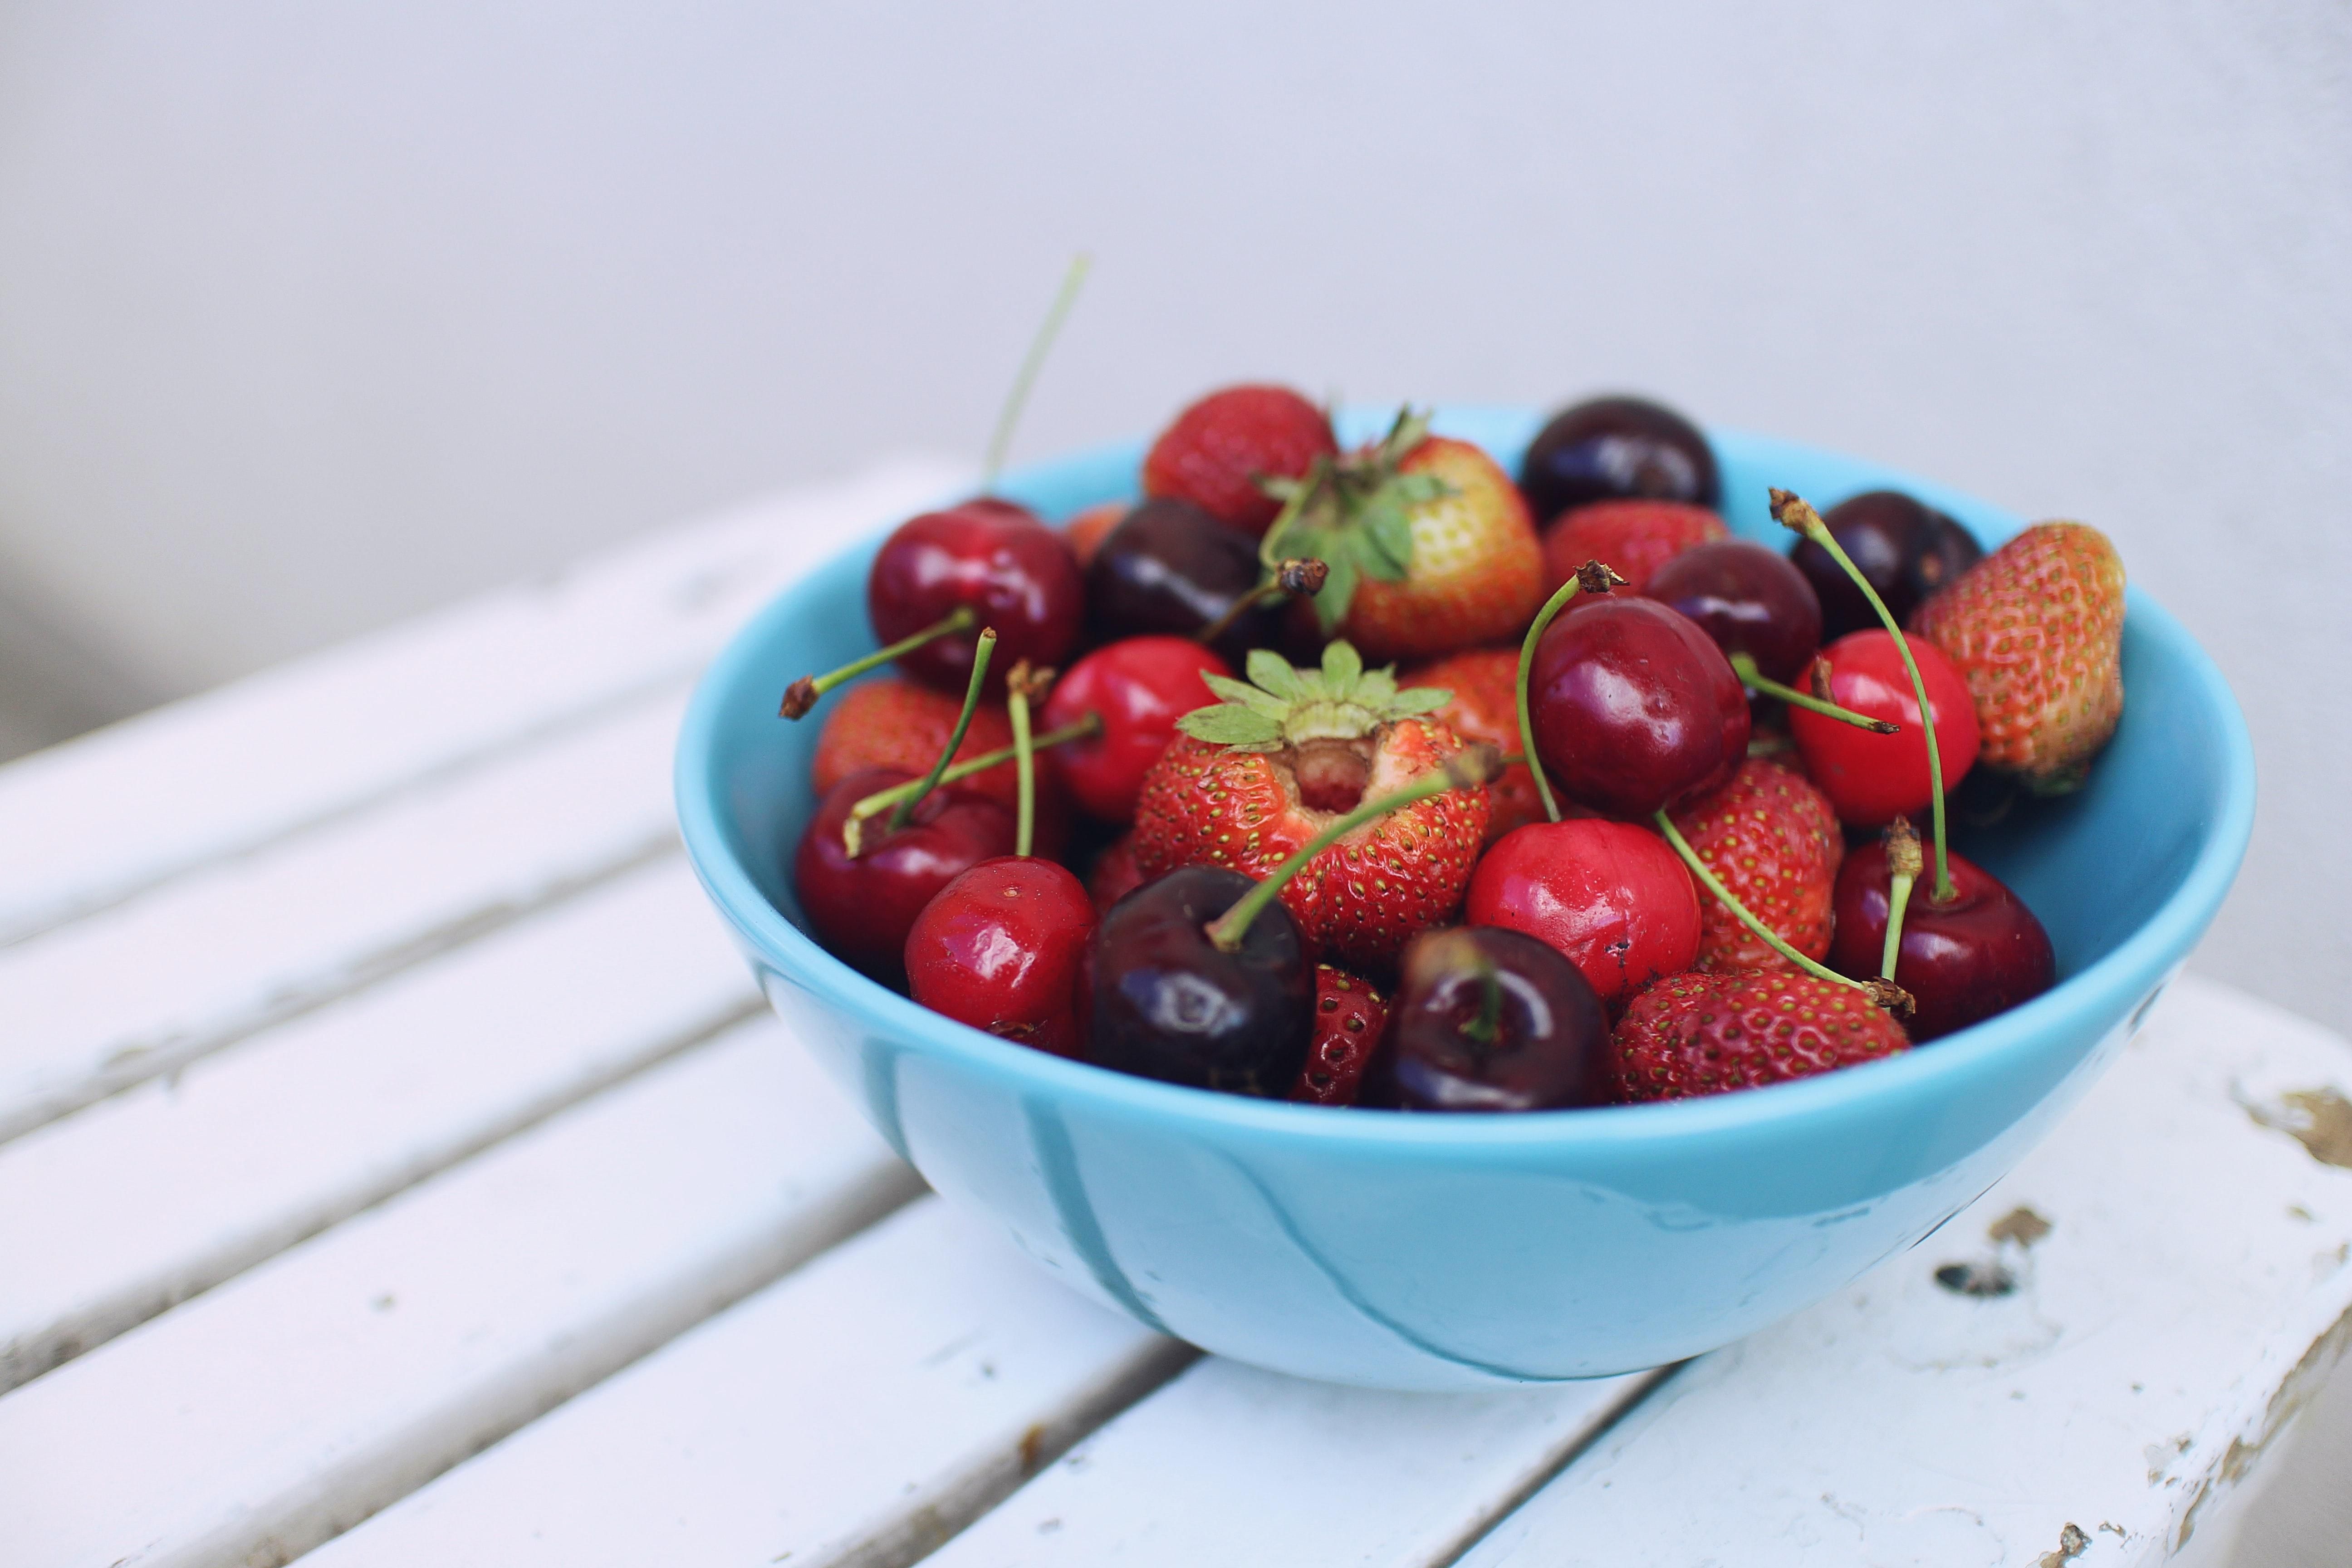 Жители Польши рассказали, где покупают вкусные сезонные ягоды